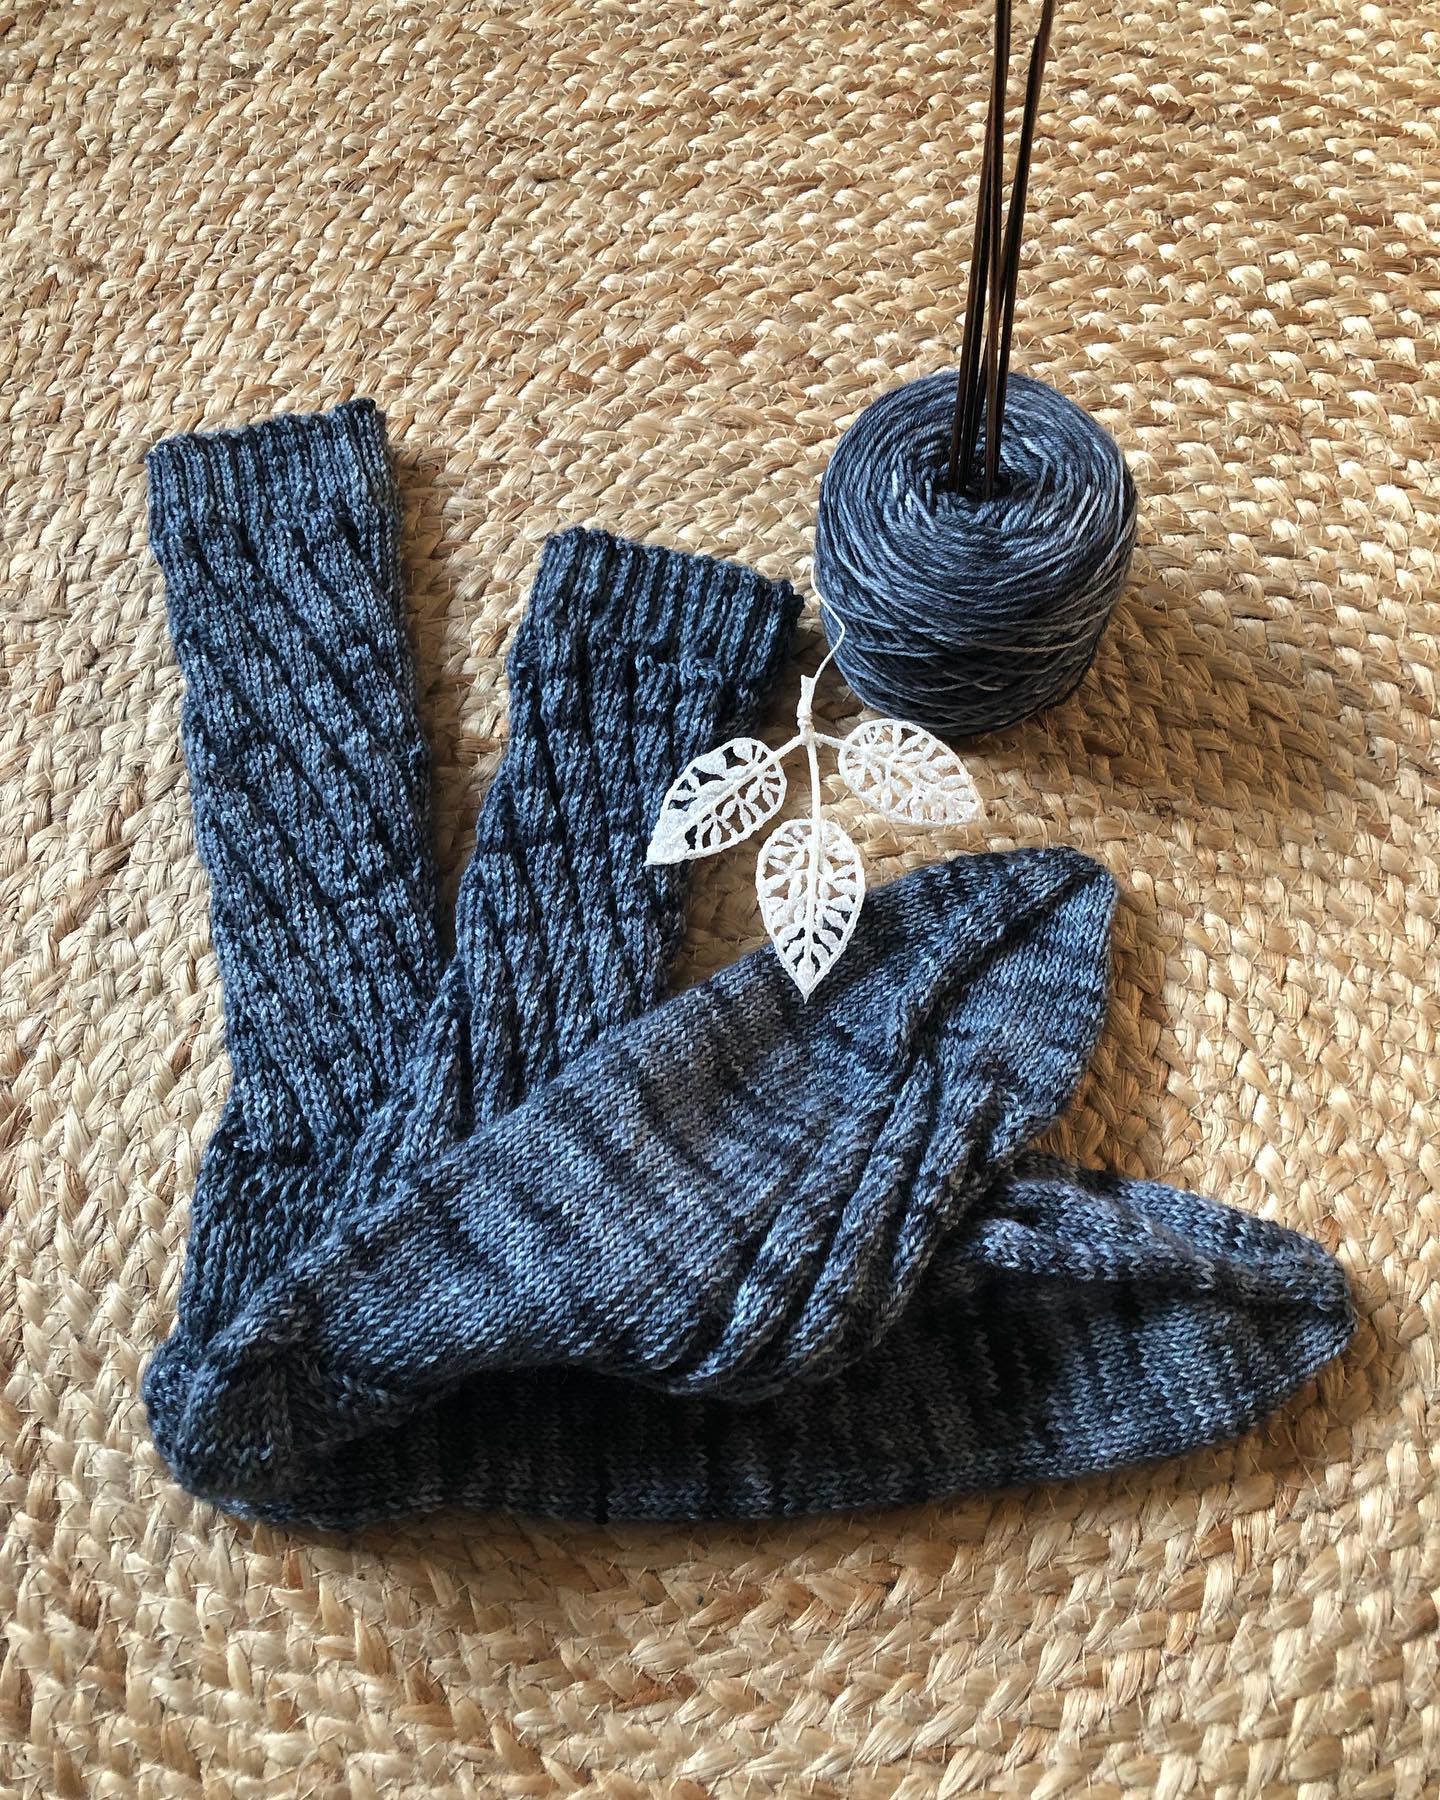 Mein Teststrick für die liebe Anna von @annaswollsoeckli ist fertig . Einmal #sockethomas in Bigfoot gr. 50/51 . Es war mir ein Vergnügen, trotz käppchenferse und monstergröße ging das Muster super in den Kopf und flott von der Hand 😊 
#knitting #knittersofinstagram #knittingsocks #sockethomas #annaswollsöckli #teststrick #socken #sockenstricken #sockenstrickengehtimmer #sockenstrickenmachtspass #sauerland #bigfoot